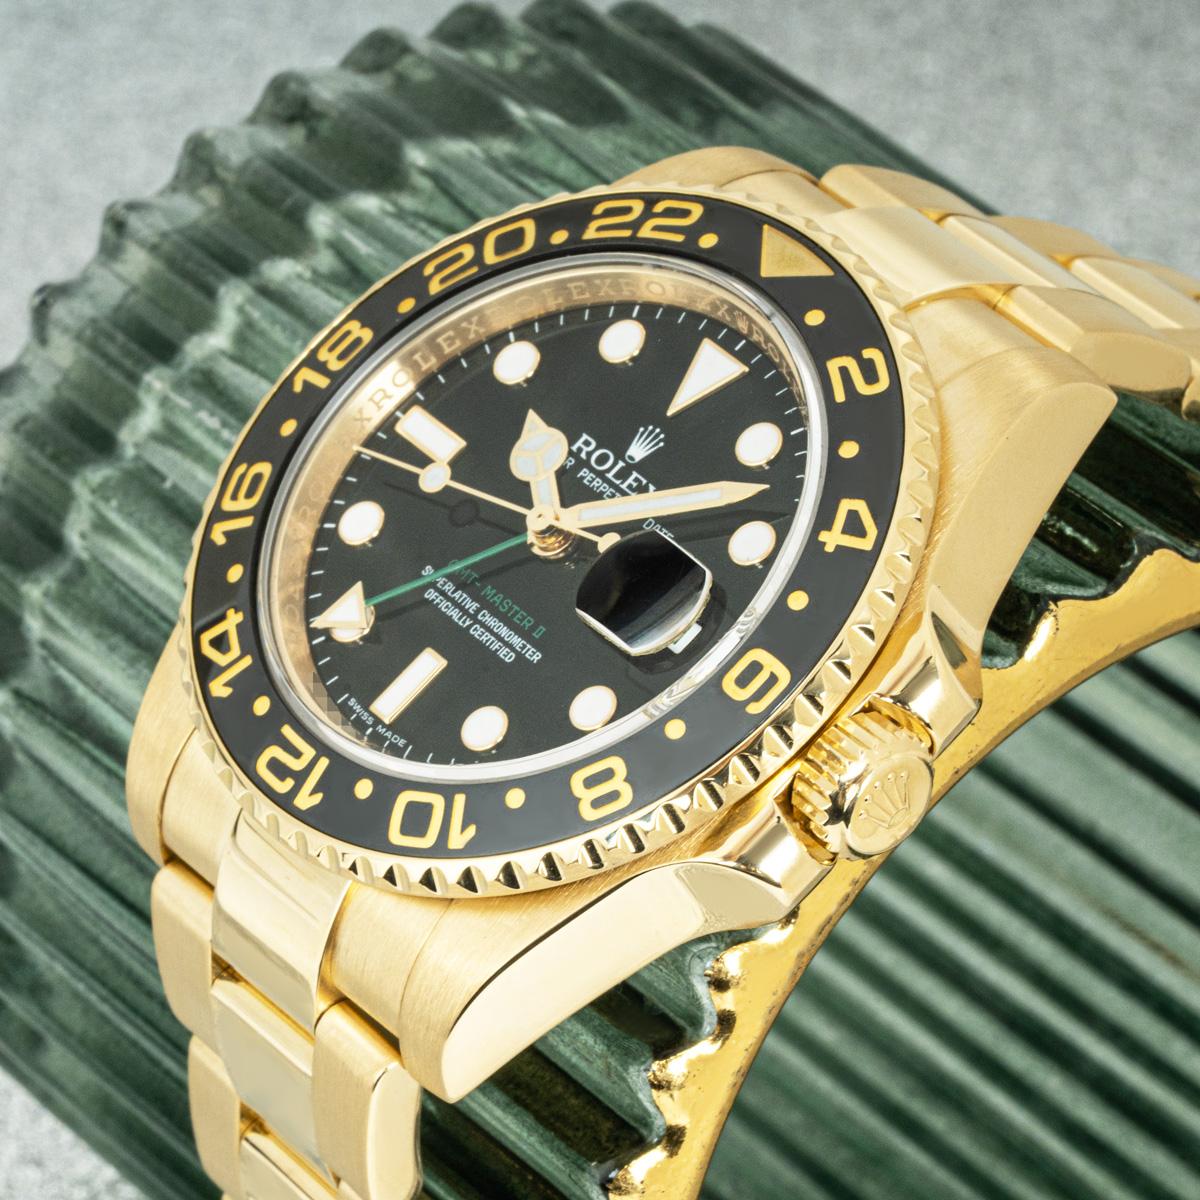 Montre-bracelet GMT-Master II pour homme, en or jaune 18 carats, fabriquée par Rolex. Cadran noir avec index appliqués, guichet de date et aiguille verte du second fuseau horaire. Le cadran est complété par une lunette tournante bidirectionnelle en